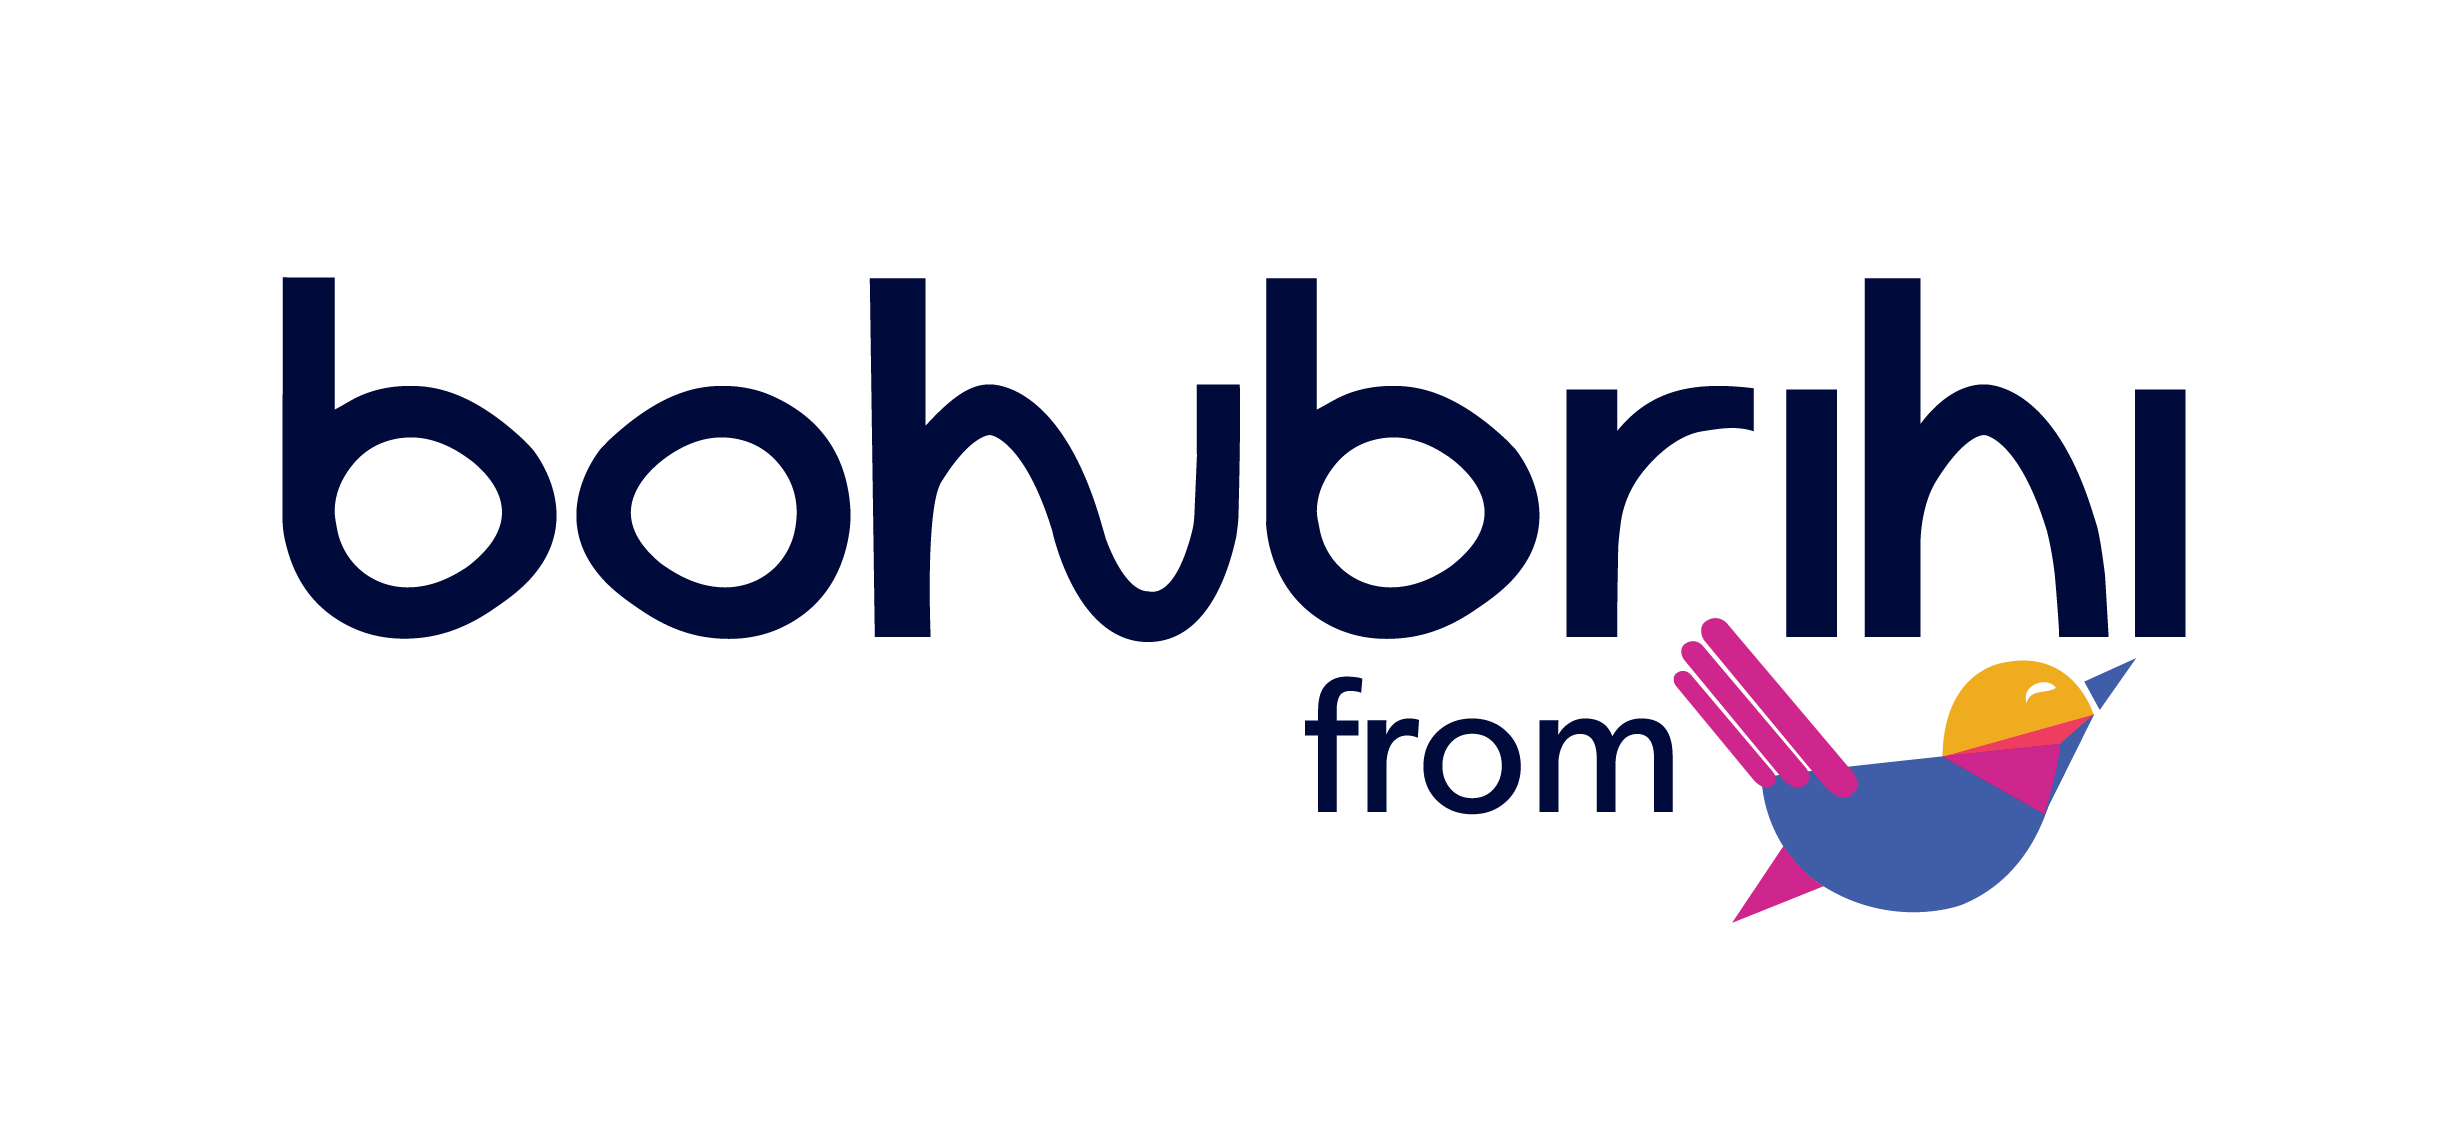 Bohubrihi from Shikho (Logo - Dark Version)